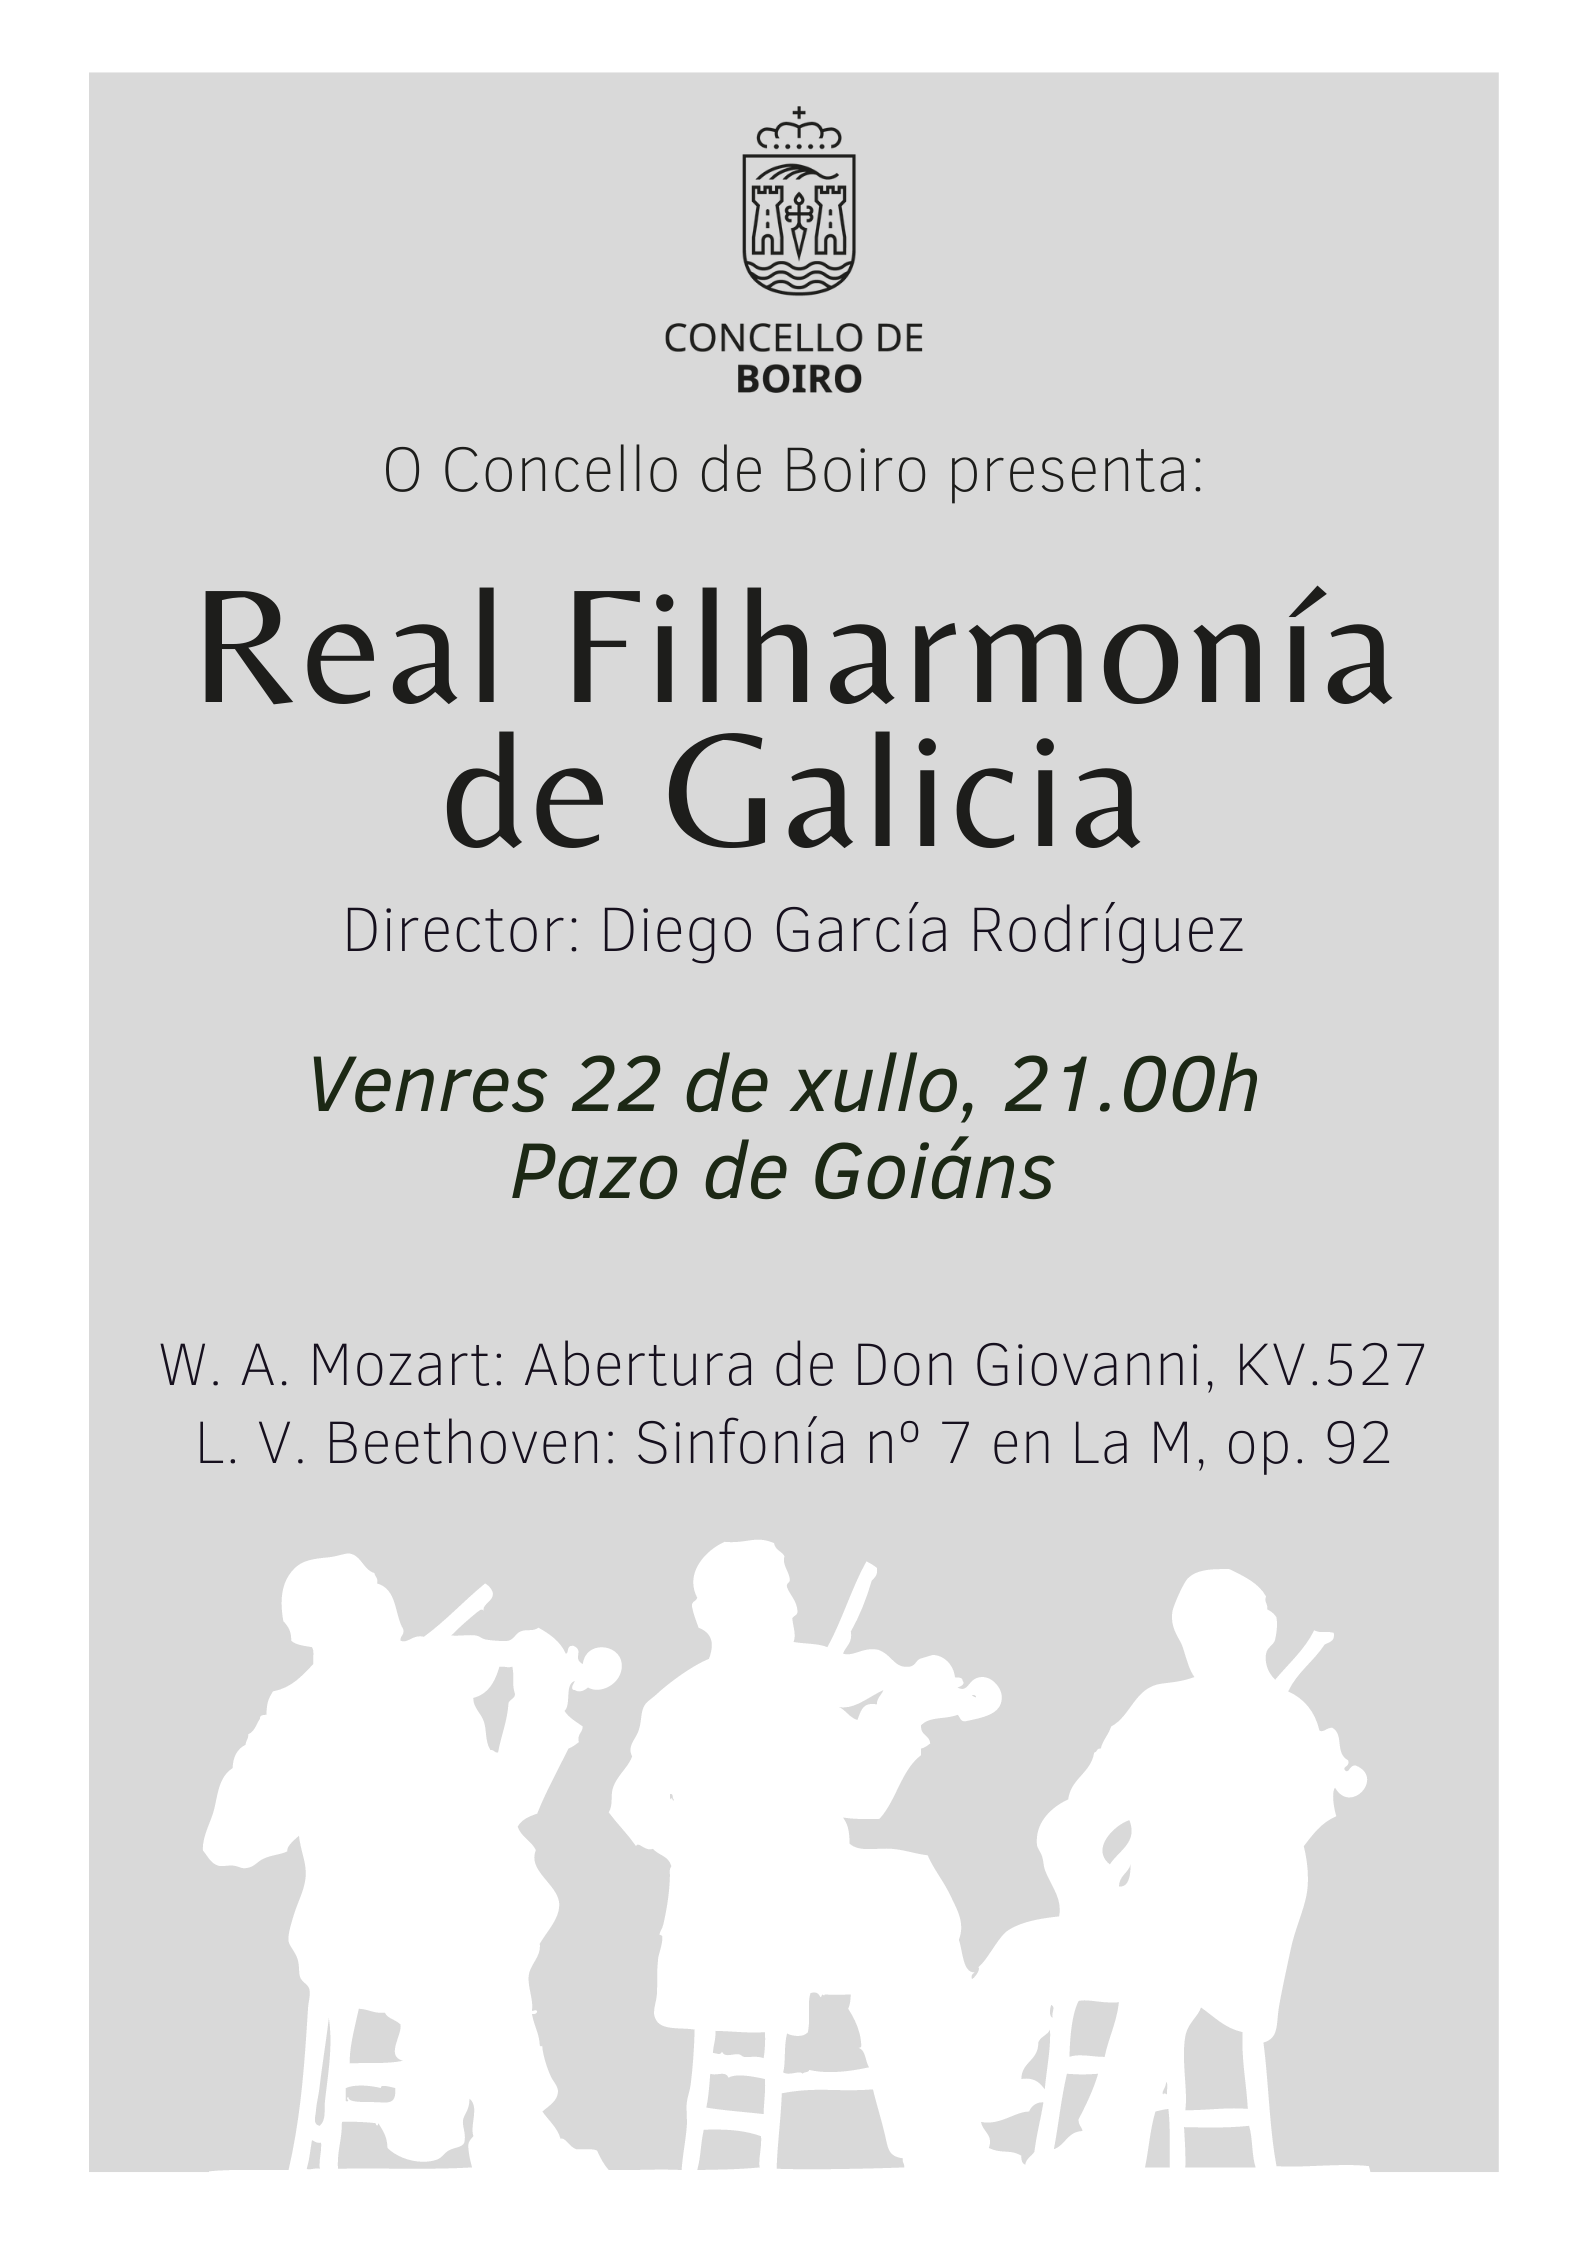 07 22 concerto Filharmonía